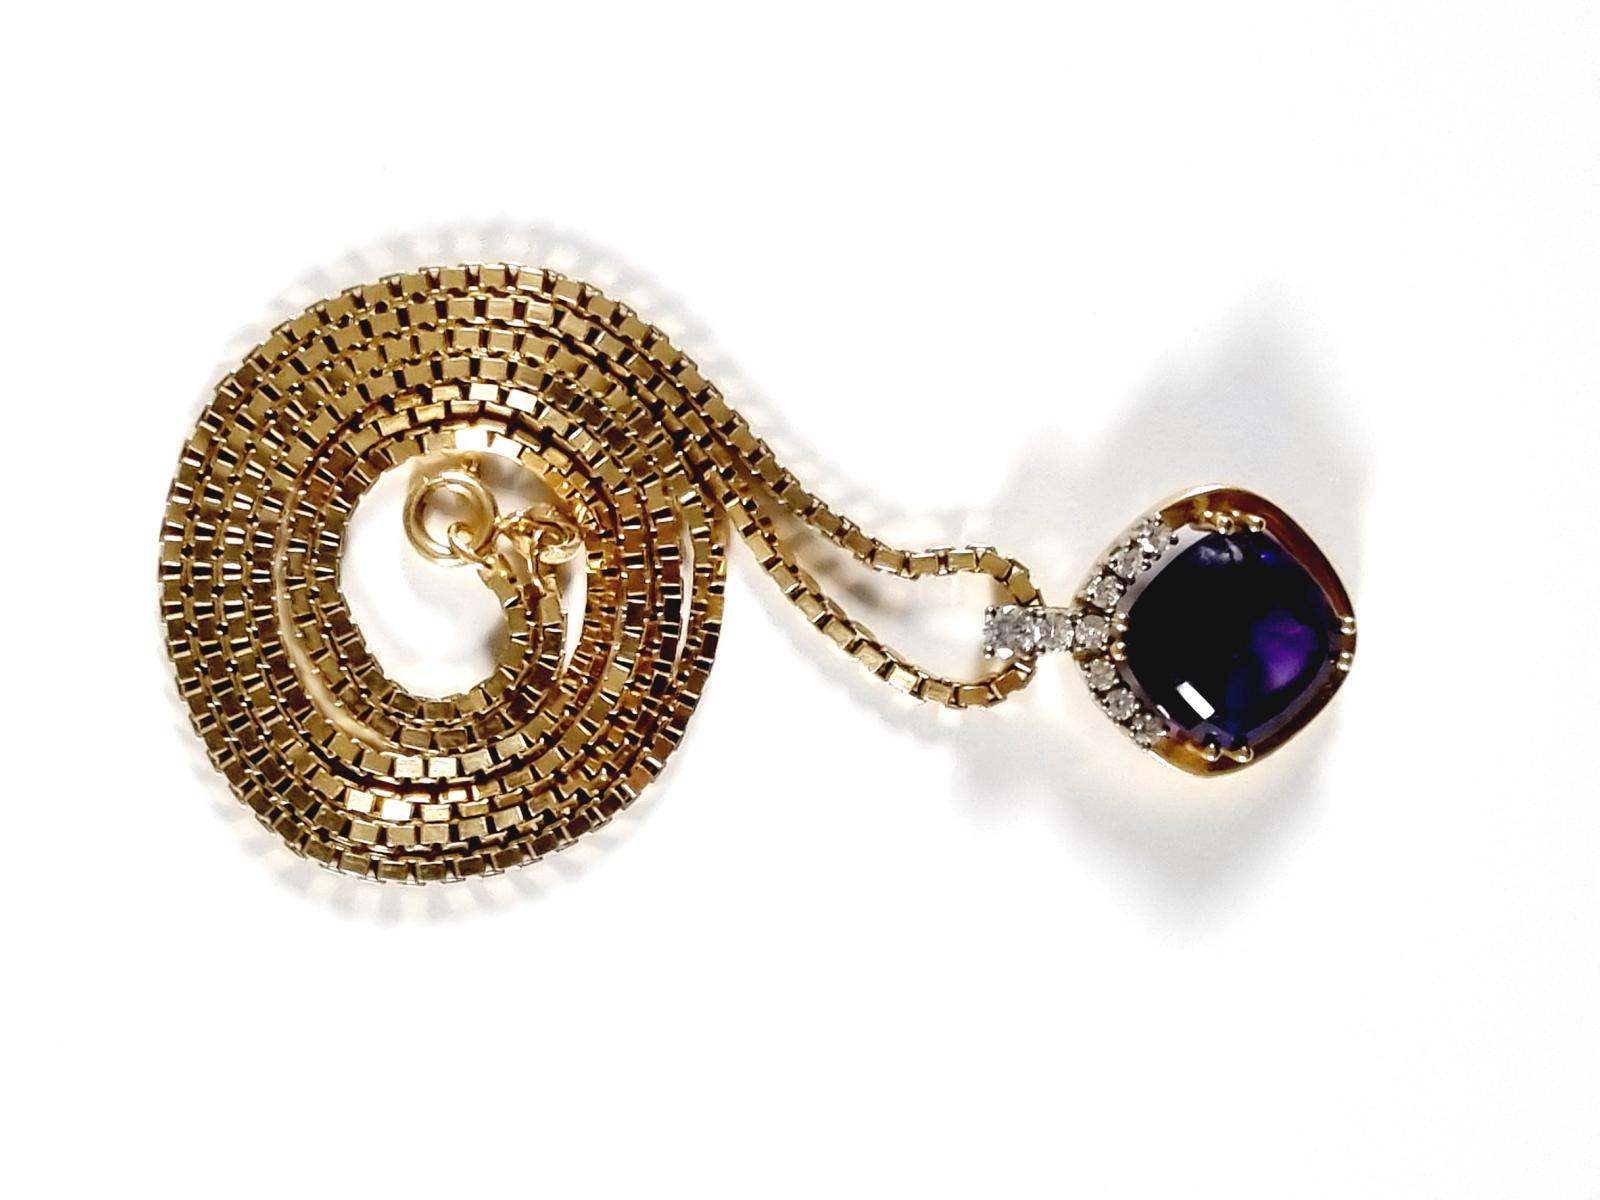 Halskette mit Amethyst- und Diamantenanhänger, 18 Karat Gelbgold